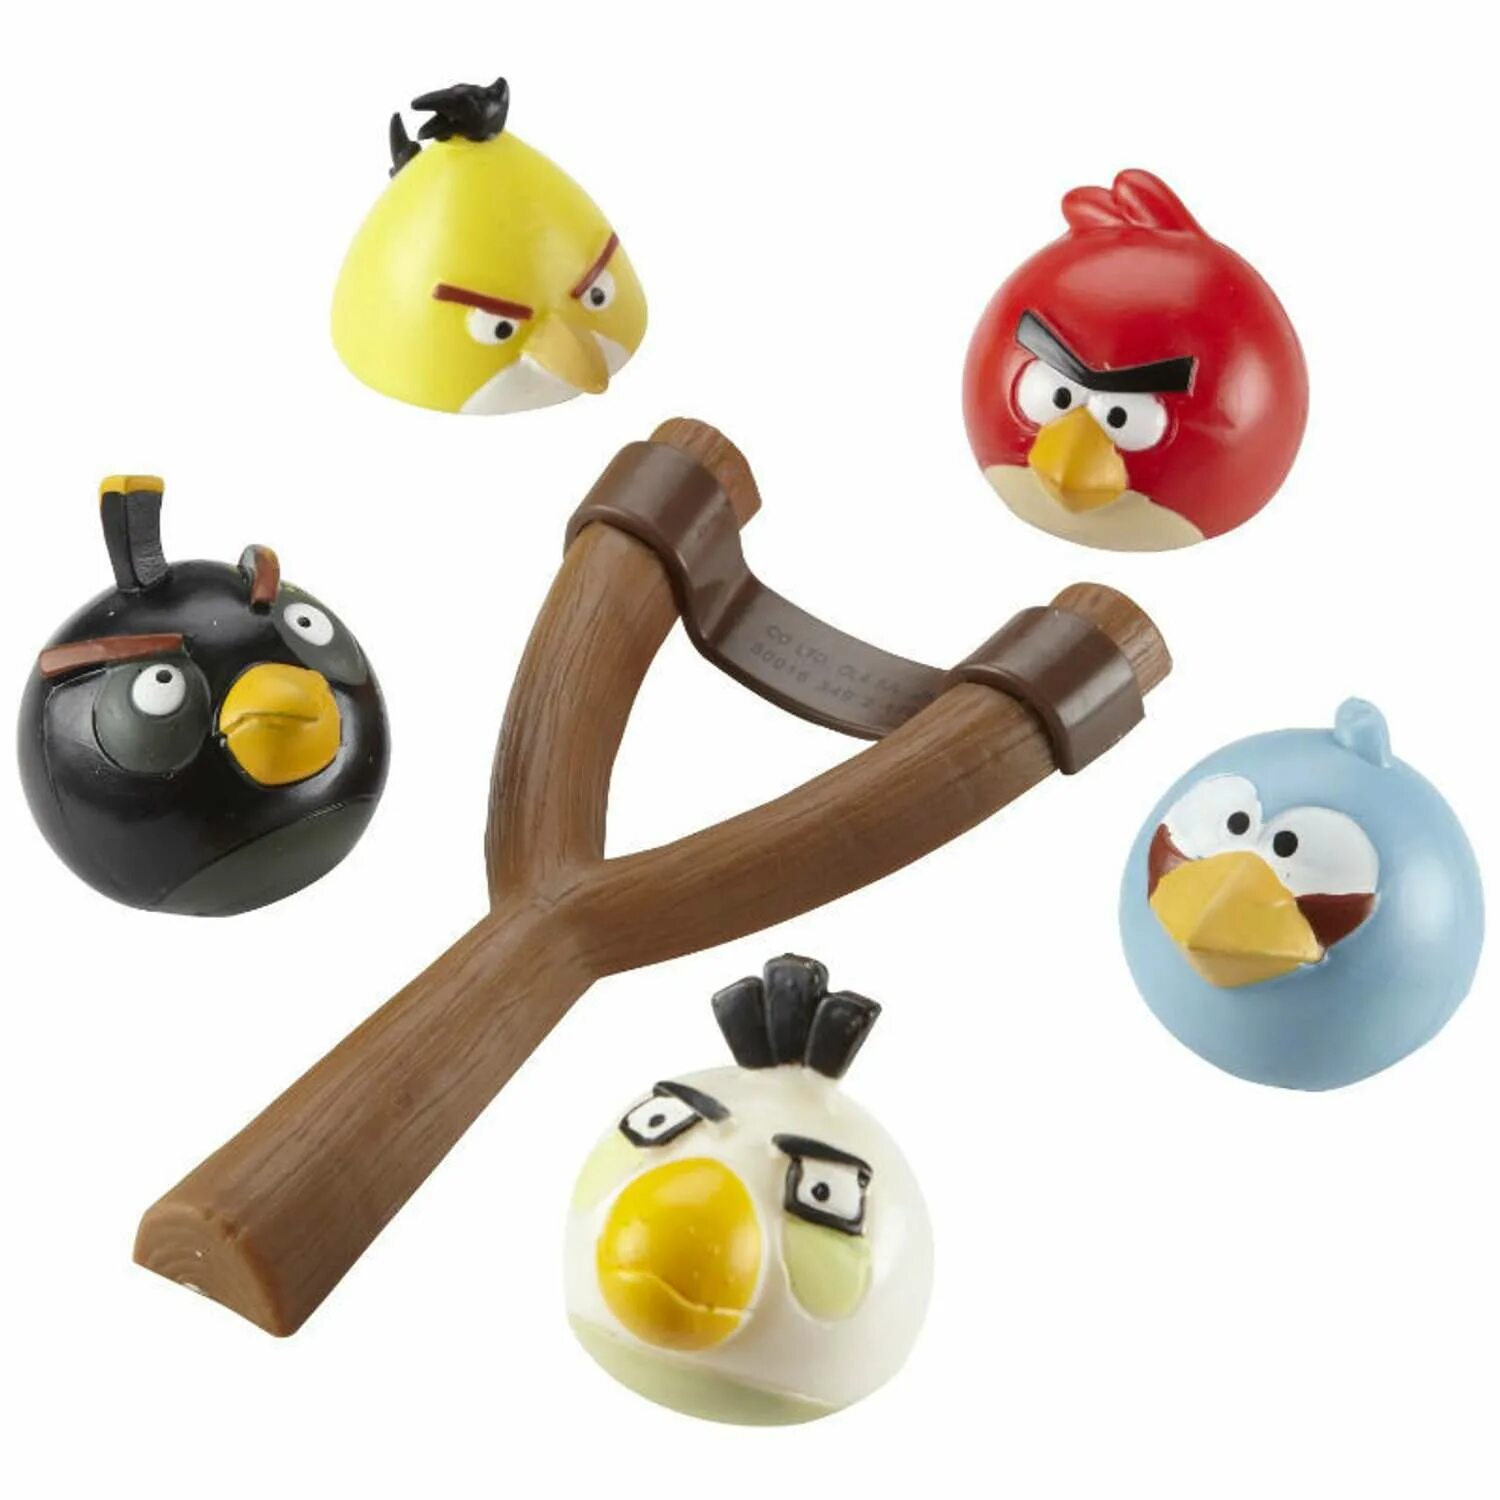 Angry birds store. Игрушки Angry Birds Mashems. Игрушки Angry Birds Rovio. Angry Birds с Машемс игрушки. Набор птичек Angry Birds (Chericole CTC-ab-5).